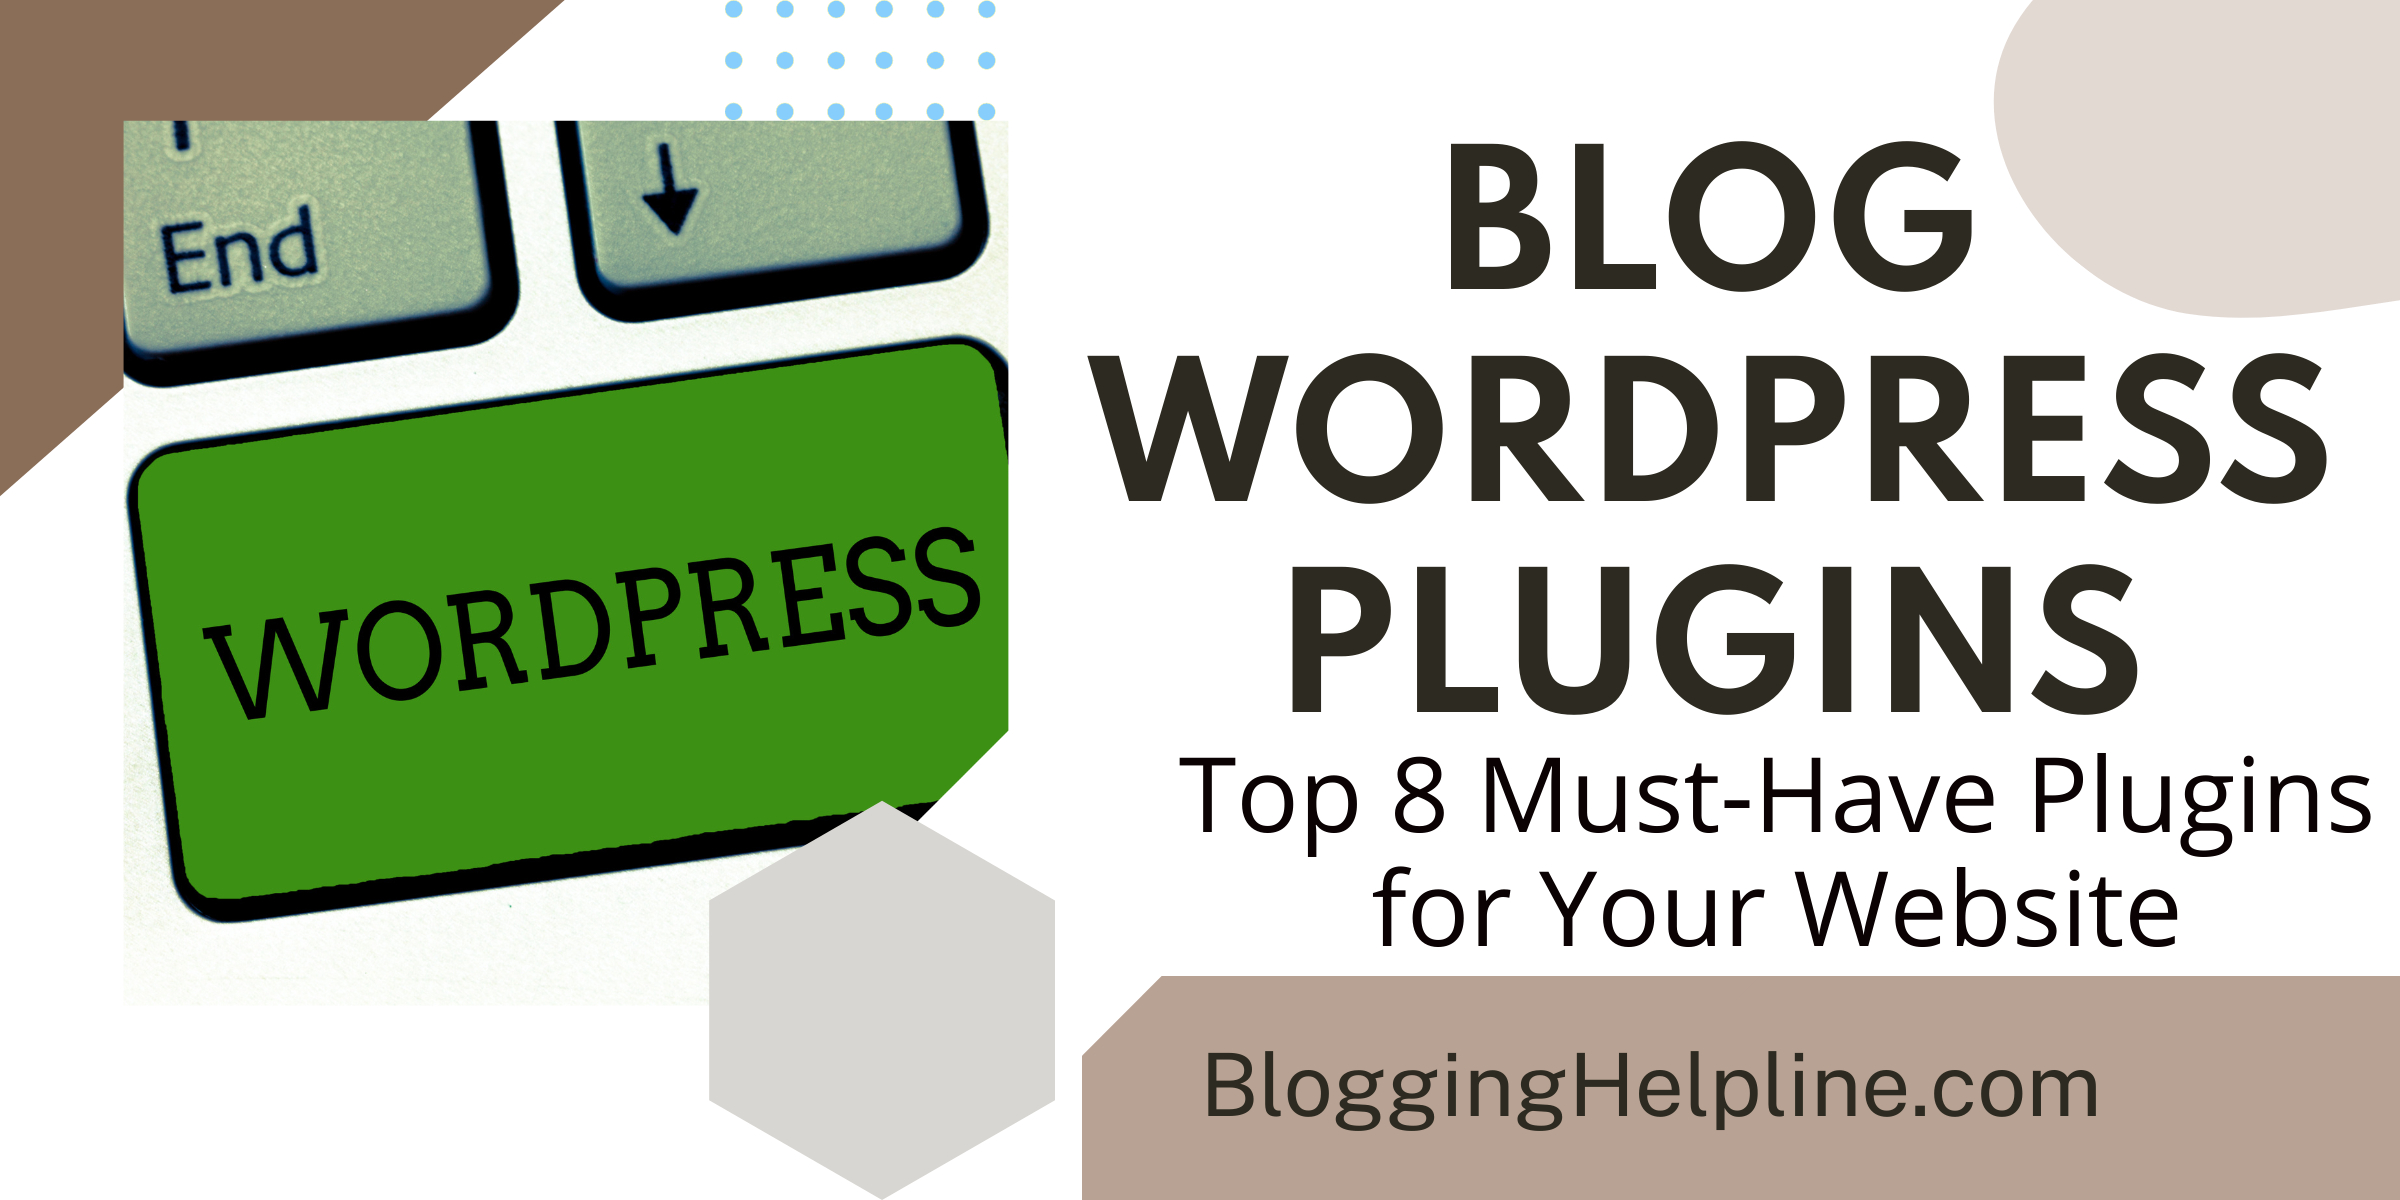 Blog WordPress Plugins